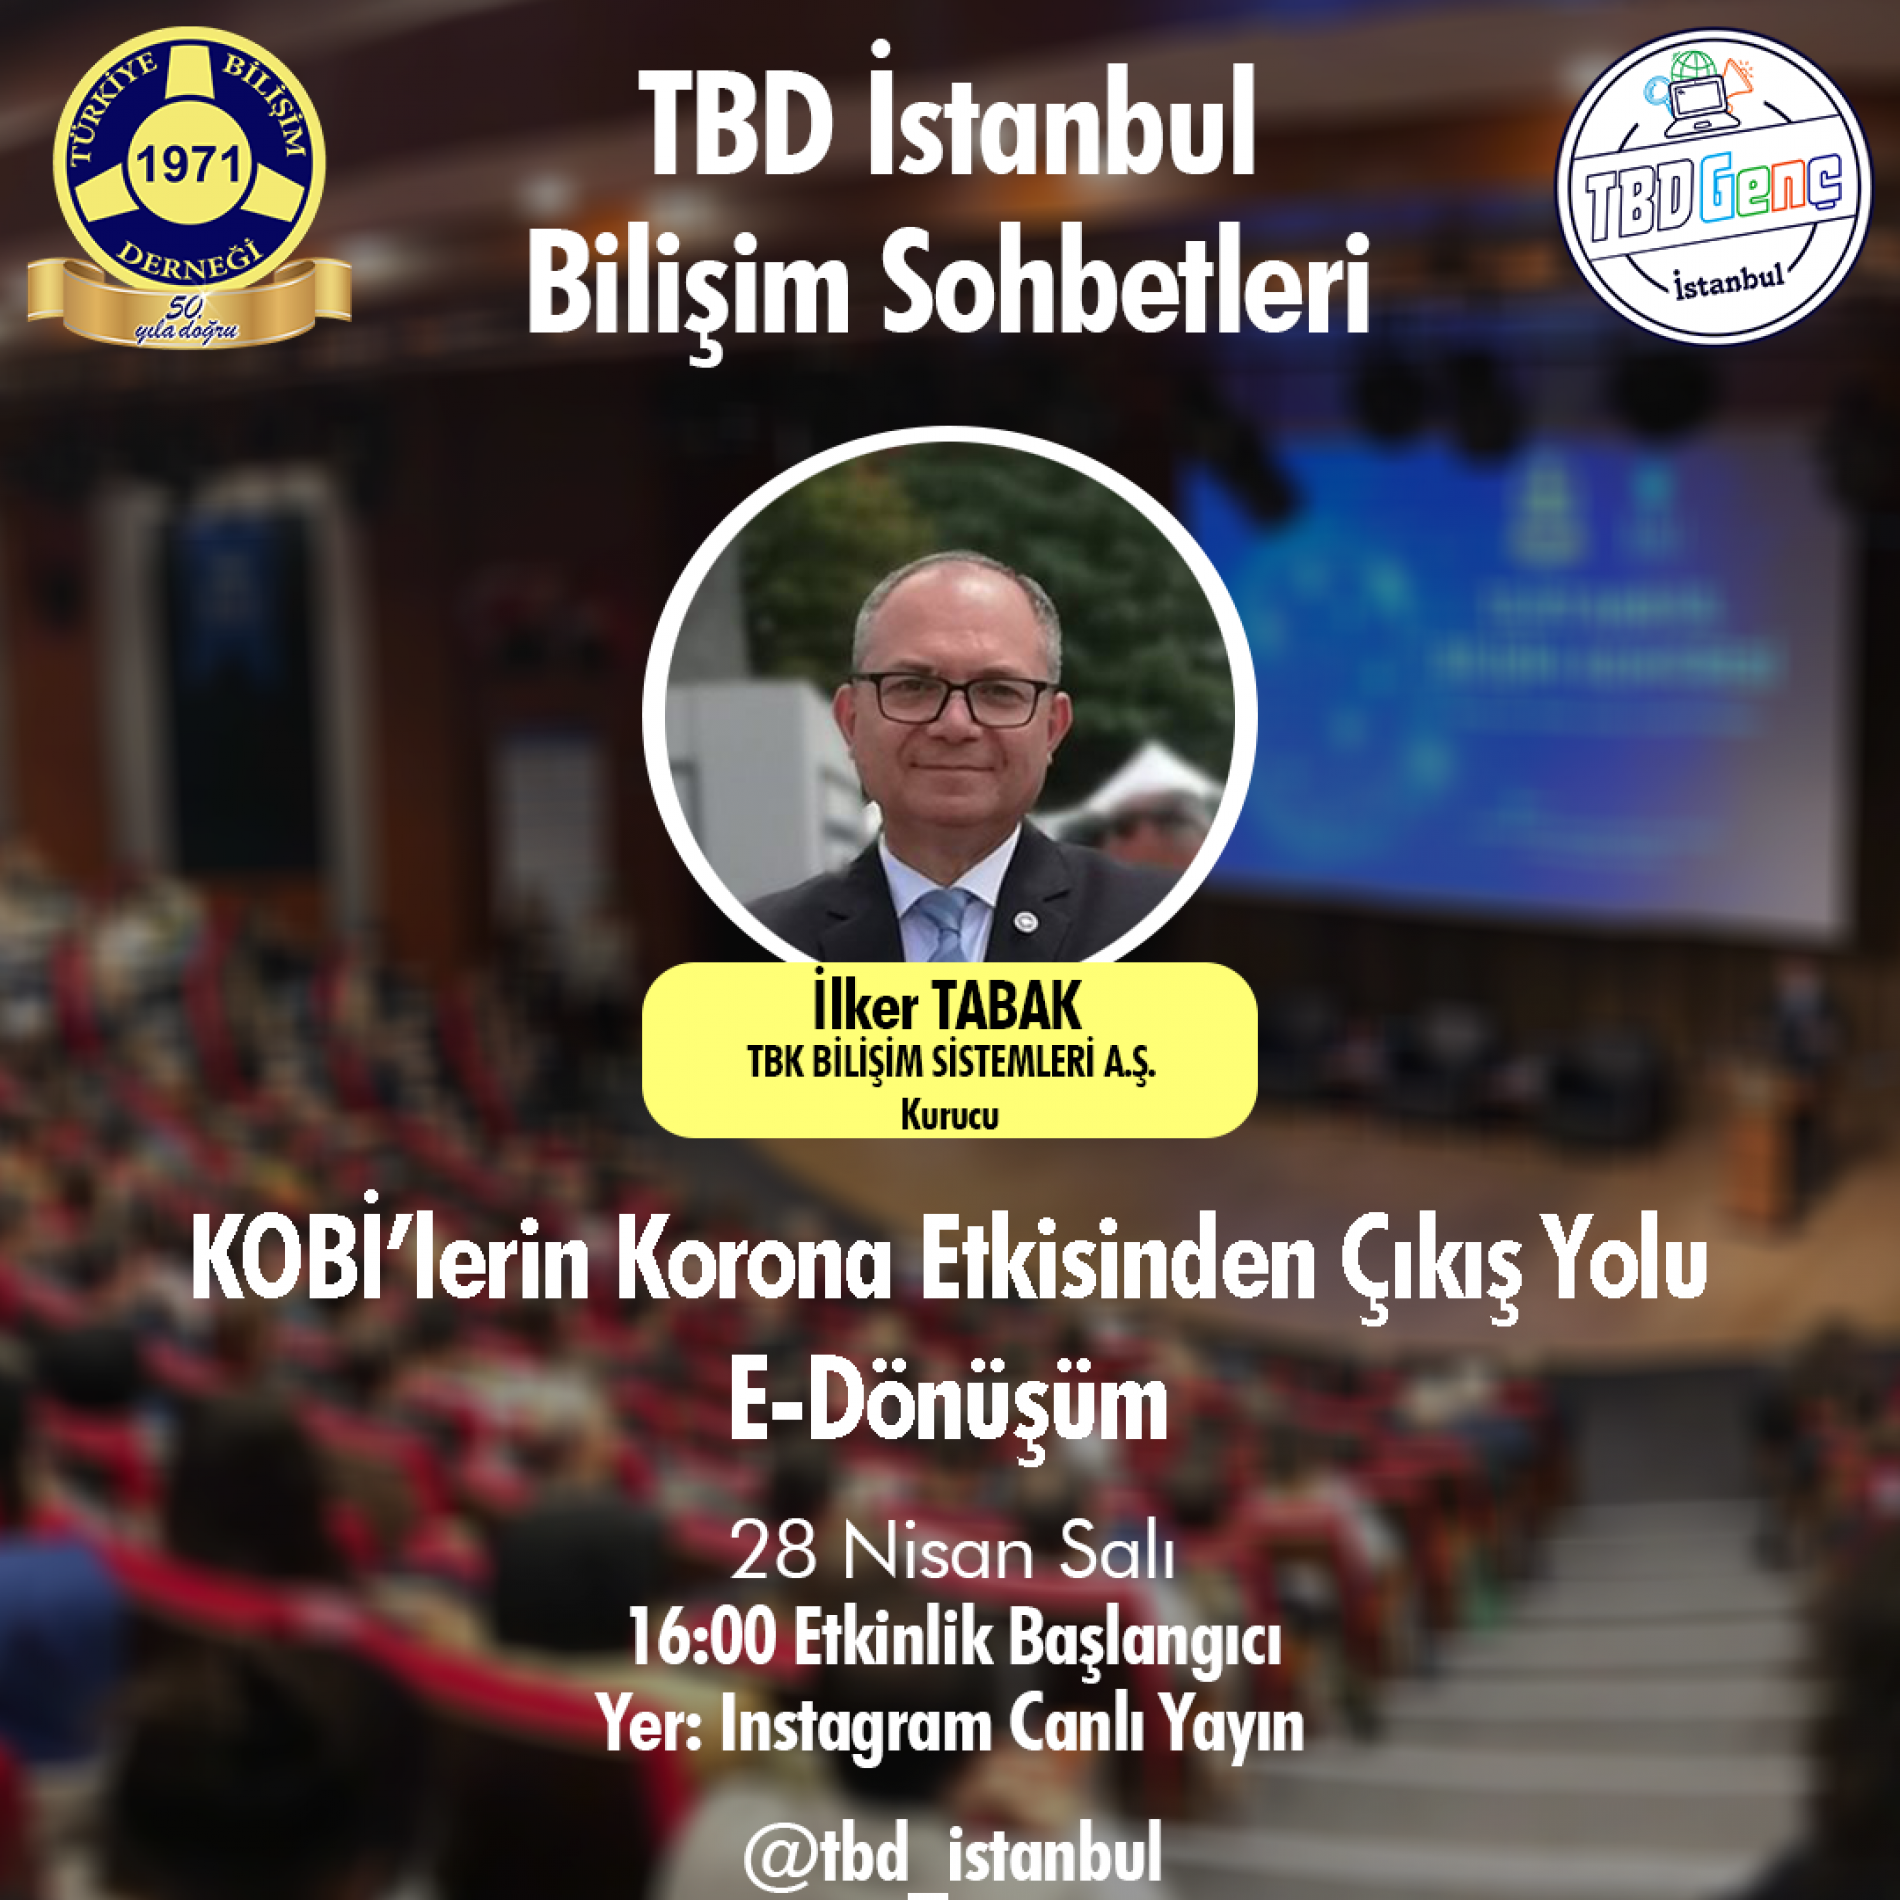 TBD İstanbul Bilişim Sohbetleri: KOBİ’lerin Korona Etkisinden Çıkış Yolu: E-Dönüşüm